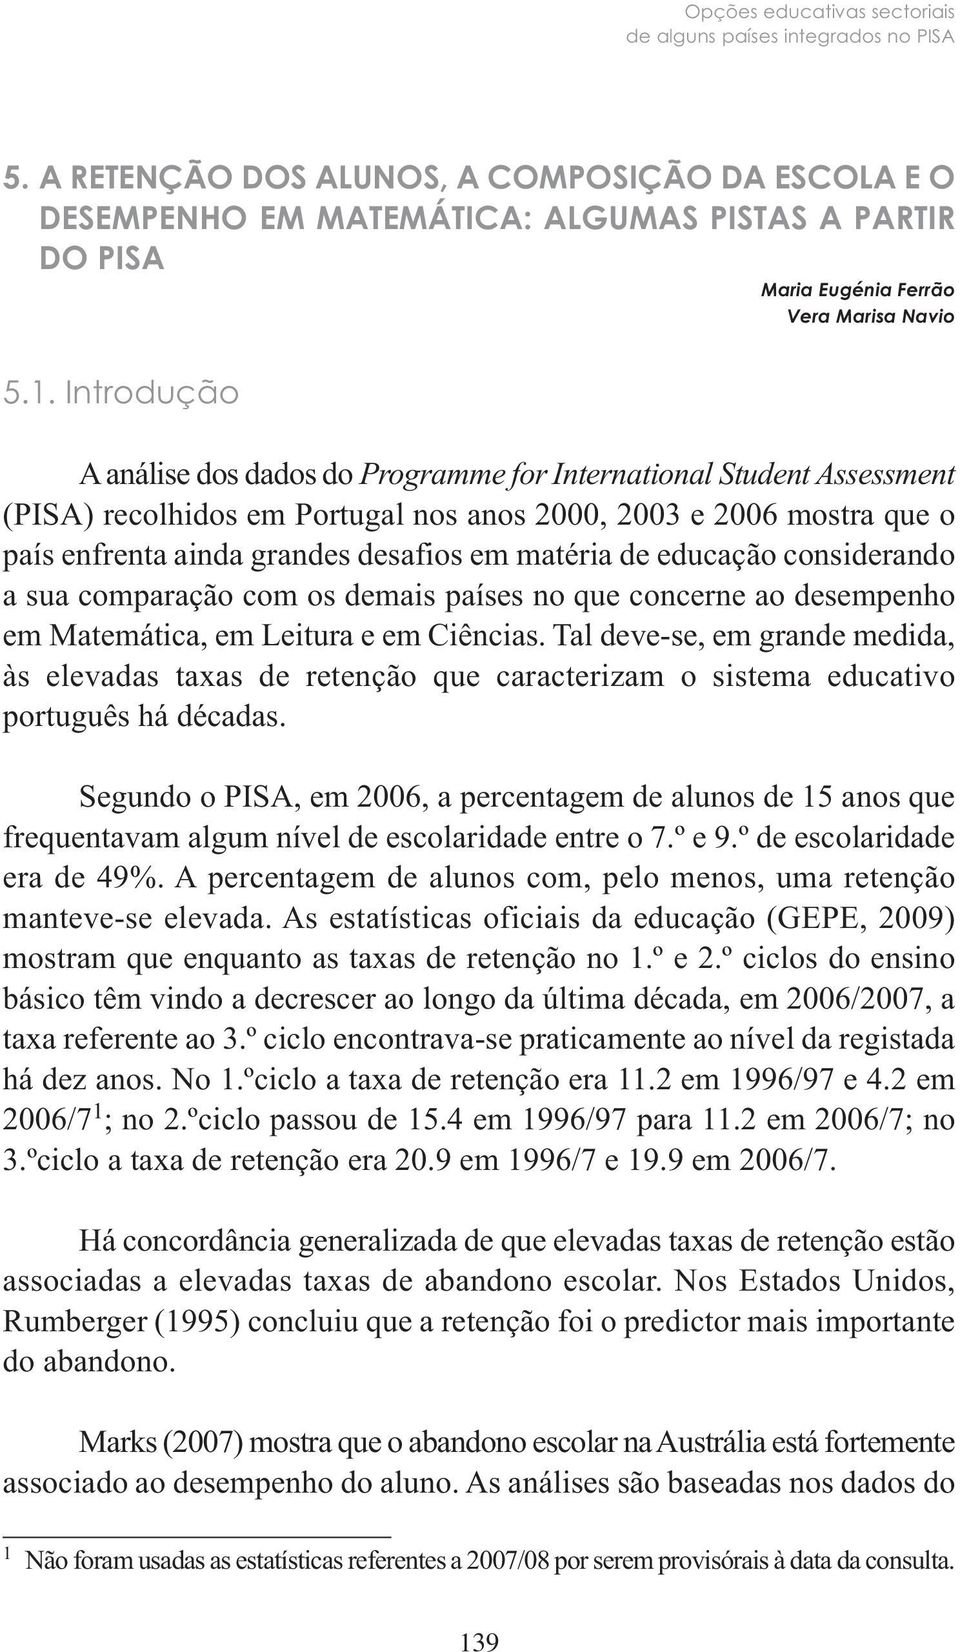 Introdução A análise dos dados do Programme for International Student Assessment (PISA) recolhidos em Portugal nos anos 2000, 2003 e 2006 mostra que o país enfrenta ainda grandes desafios em matéria